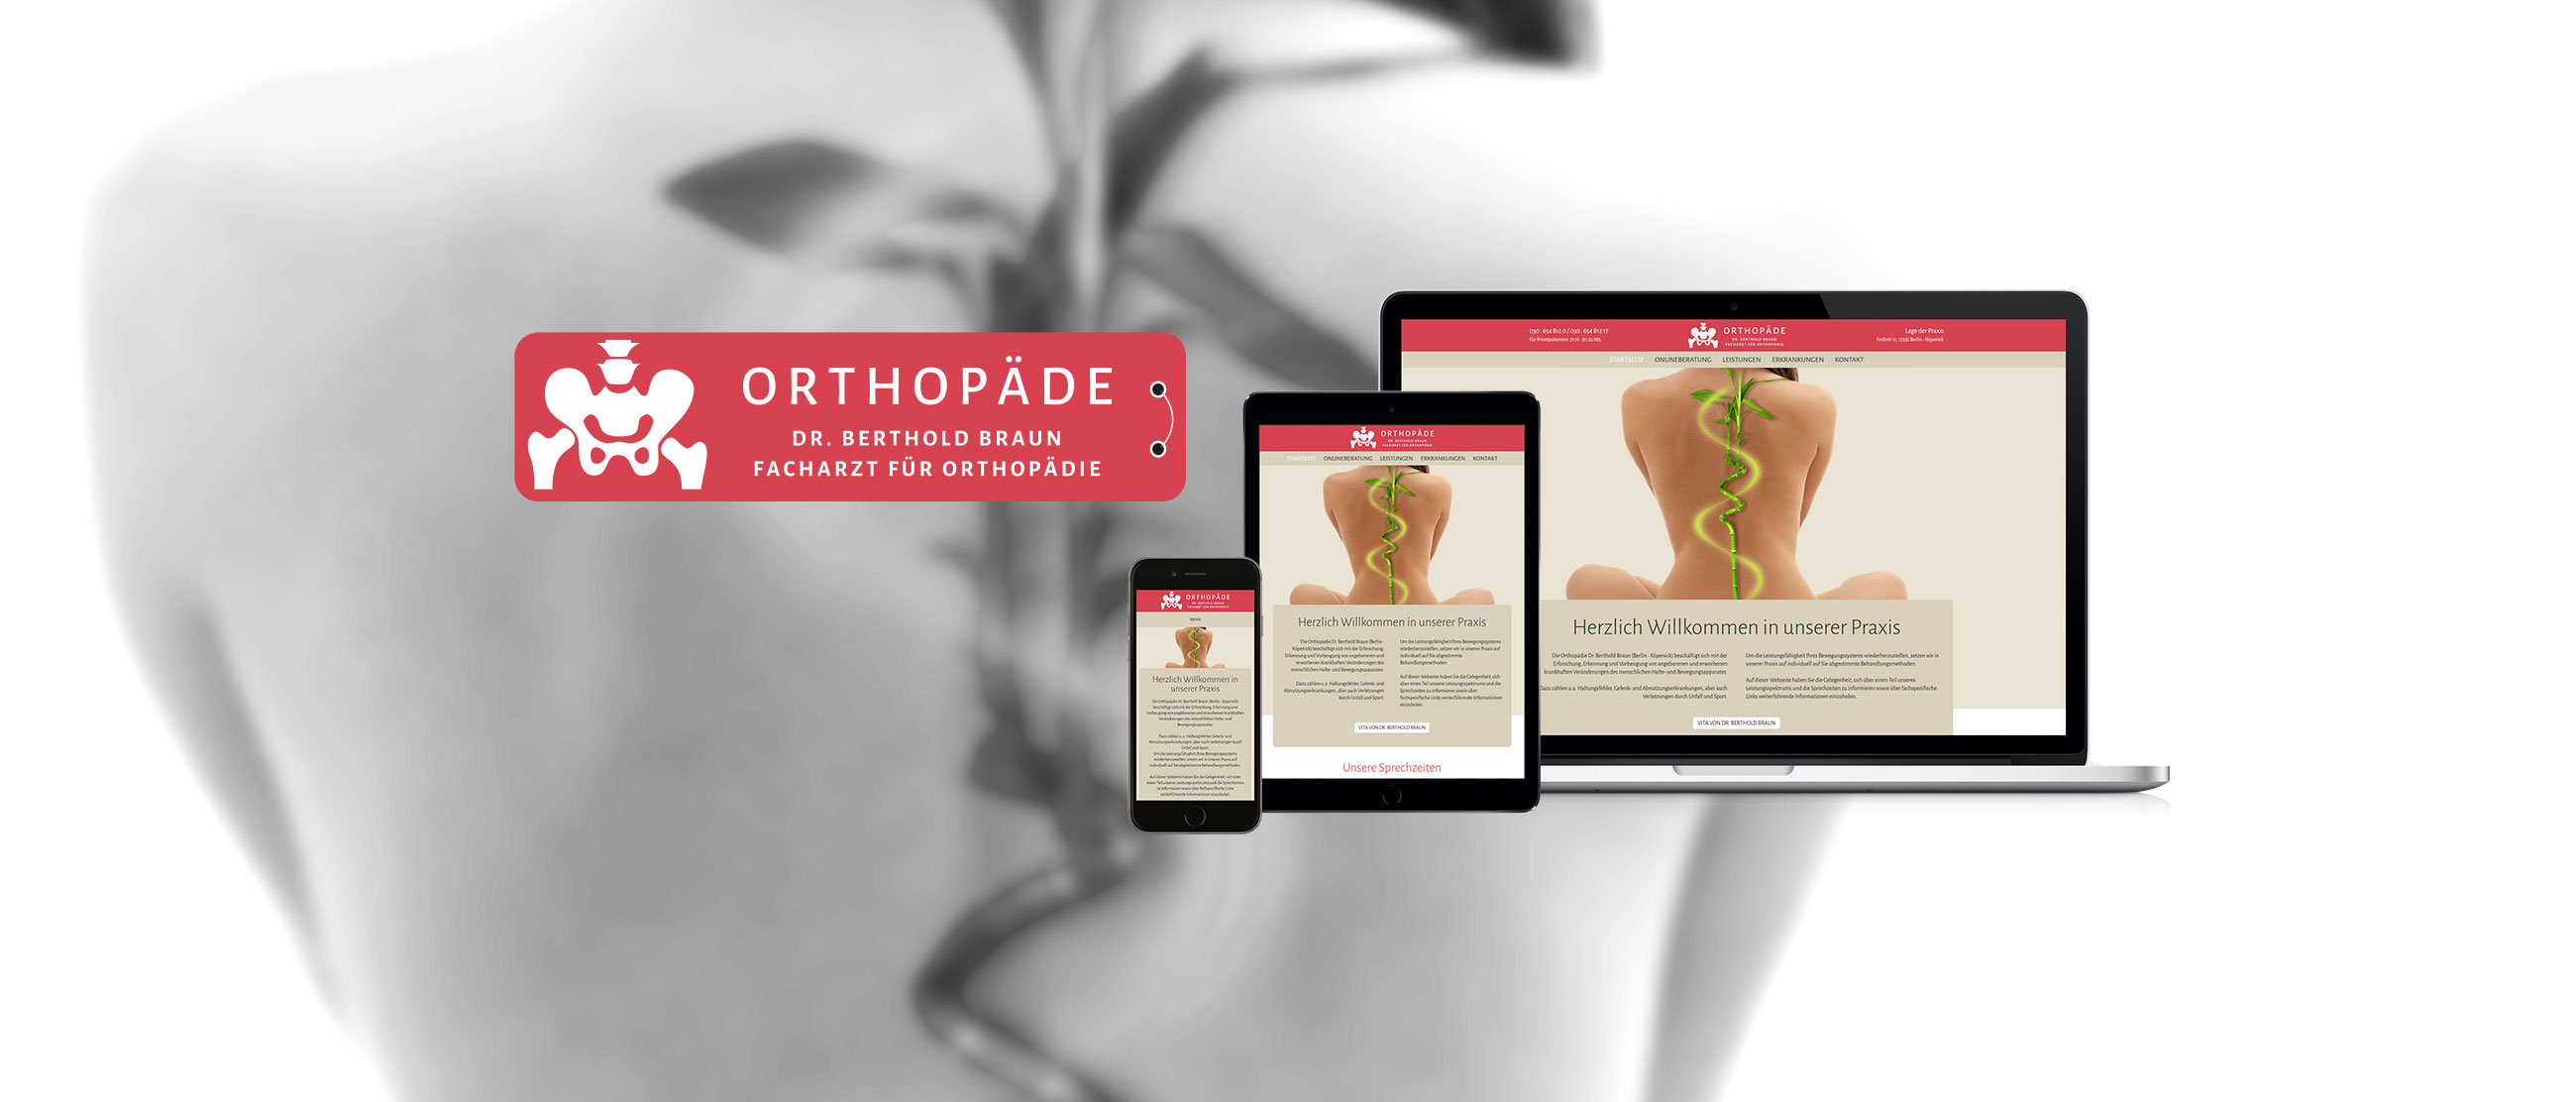 Dr. Berthold Braun - Facharzt für Orthopädie: Web-Relaunch mit Erstellung eines Responsive Designs für www.orthopädie-braun.de